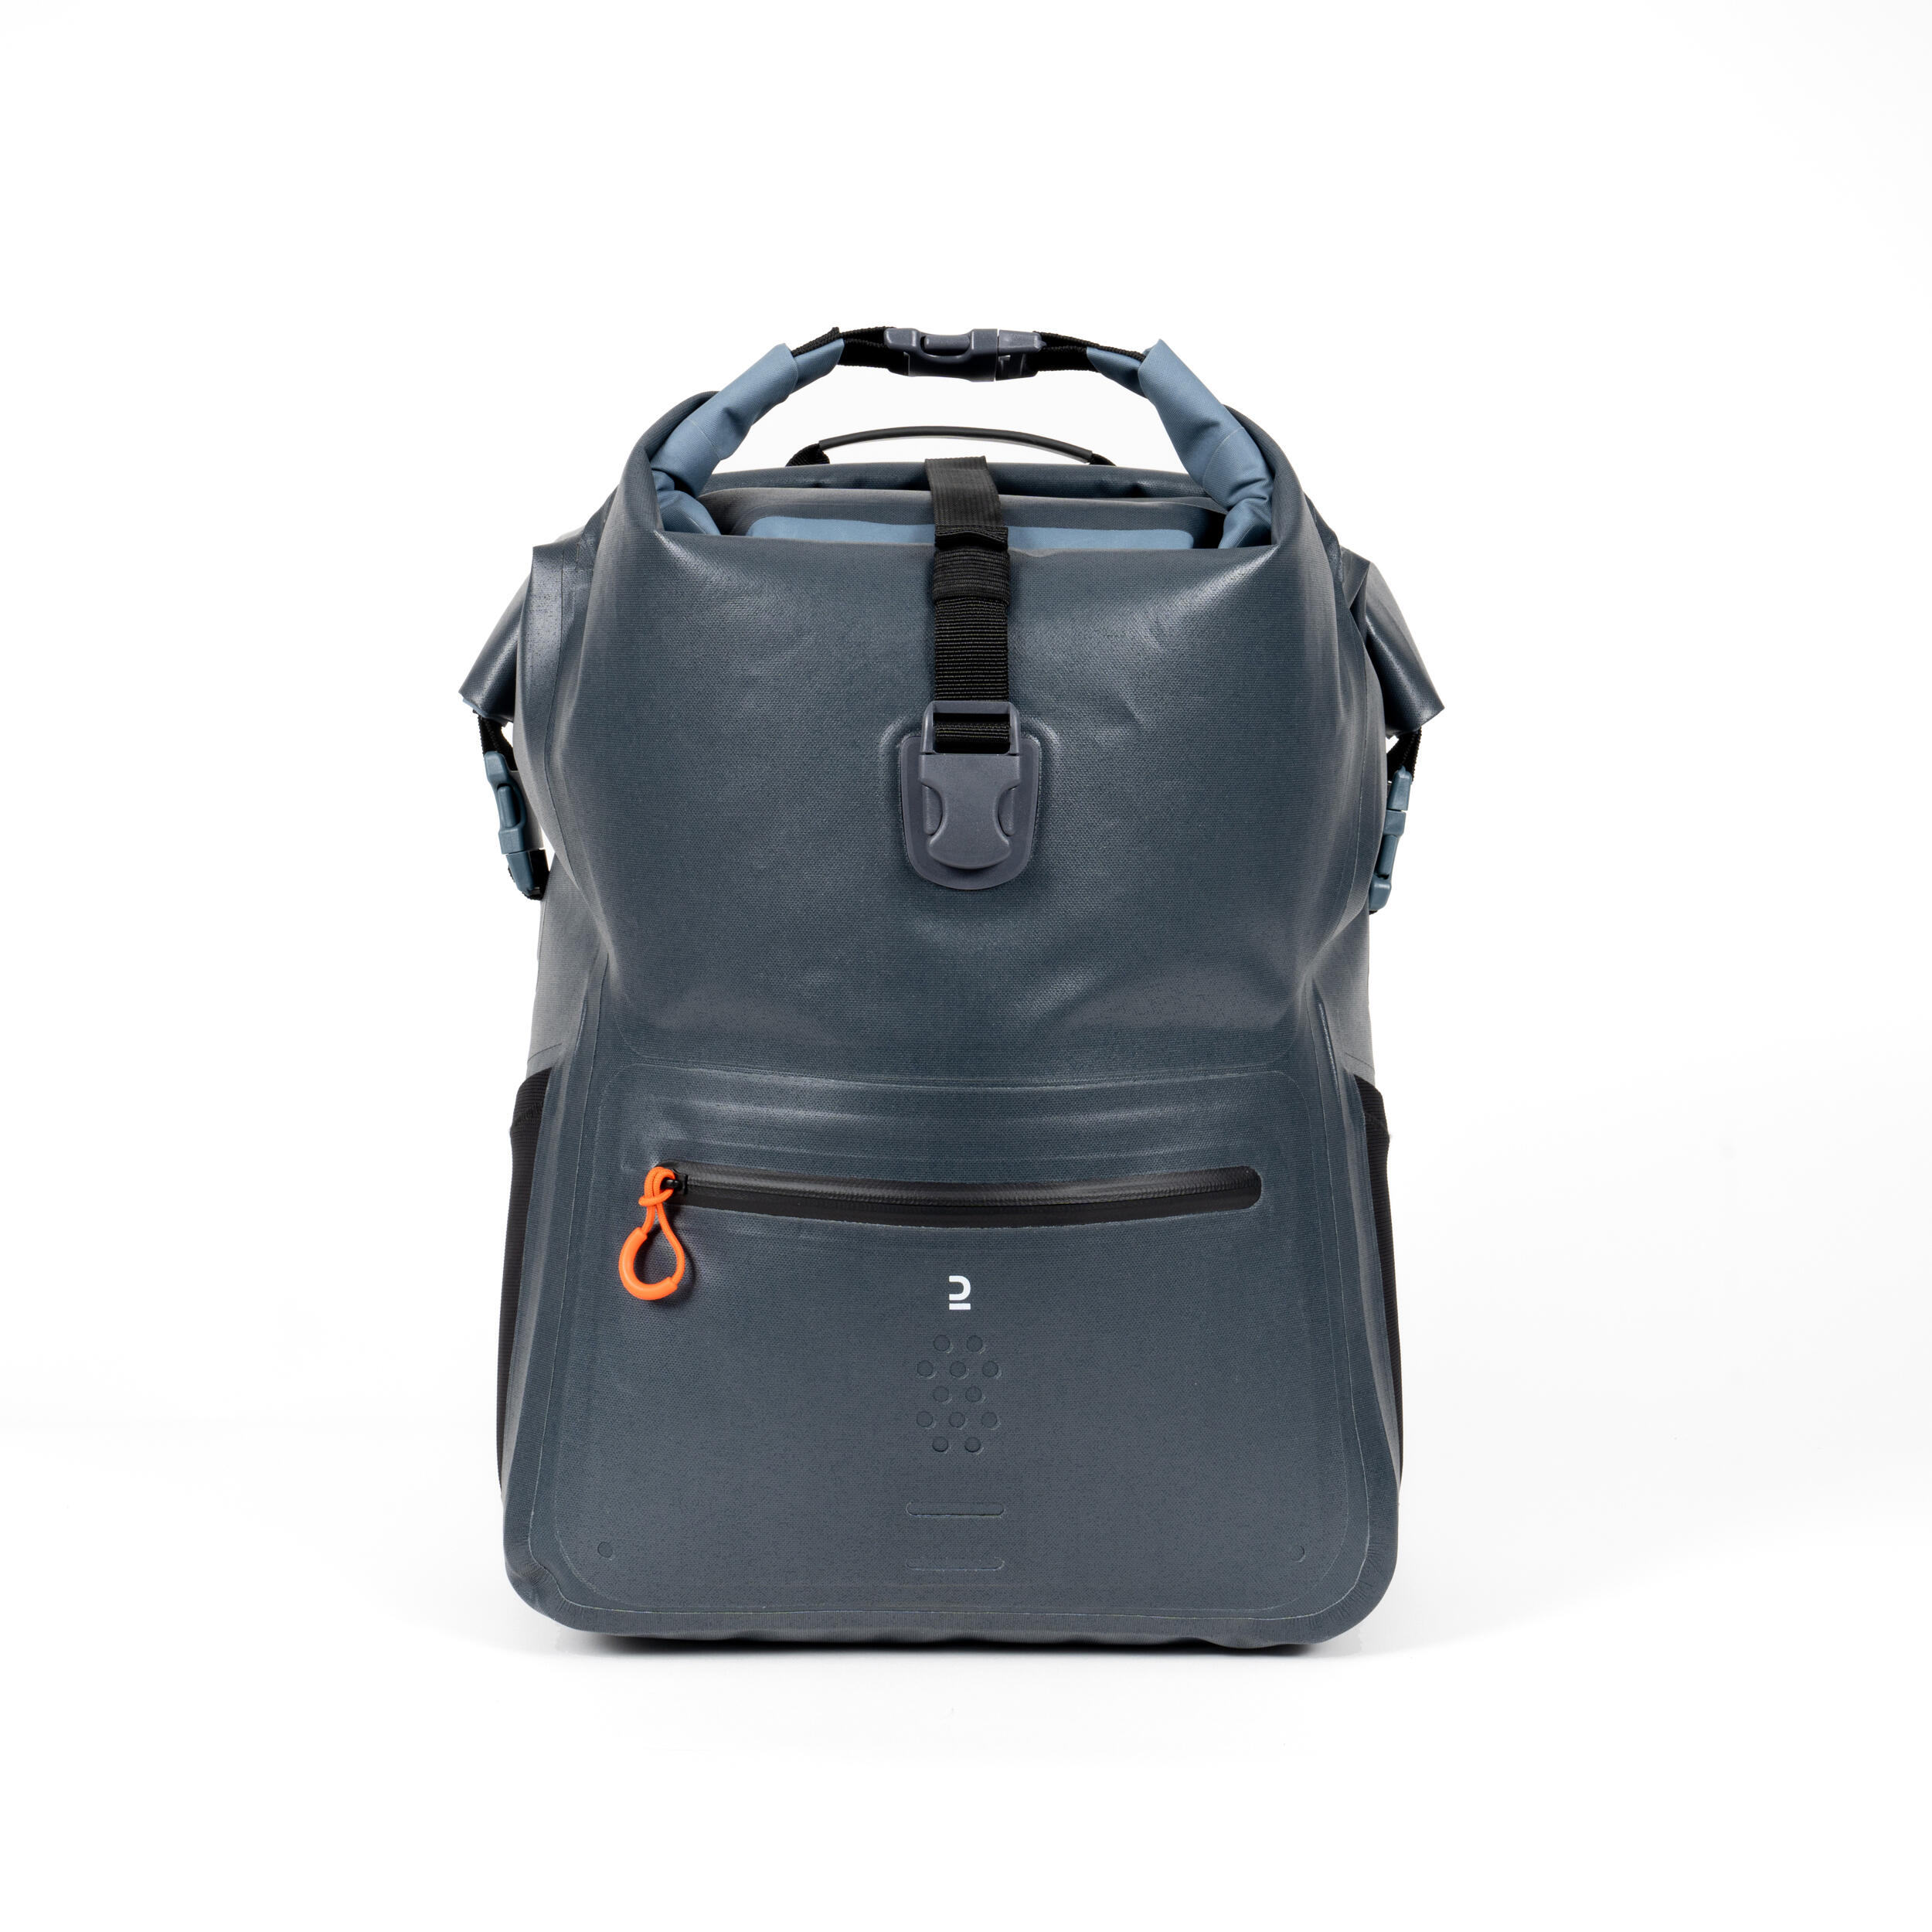 ITIWIT Waterproof backpacks, 2 sections (dry belongings, wet belongings) 35 L.